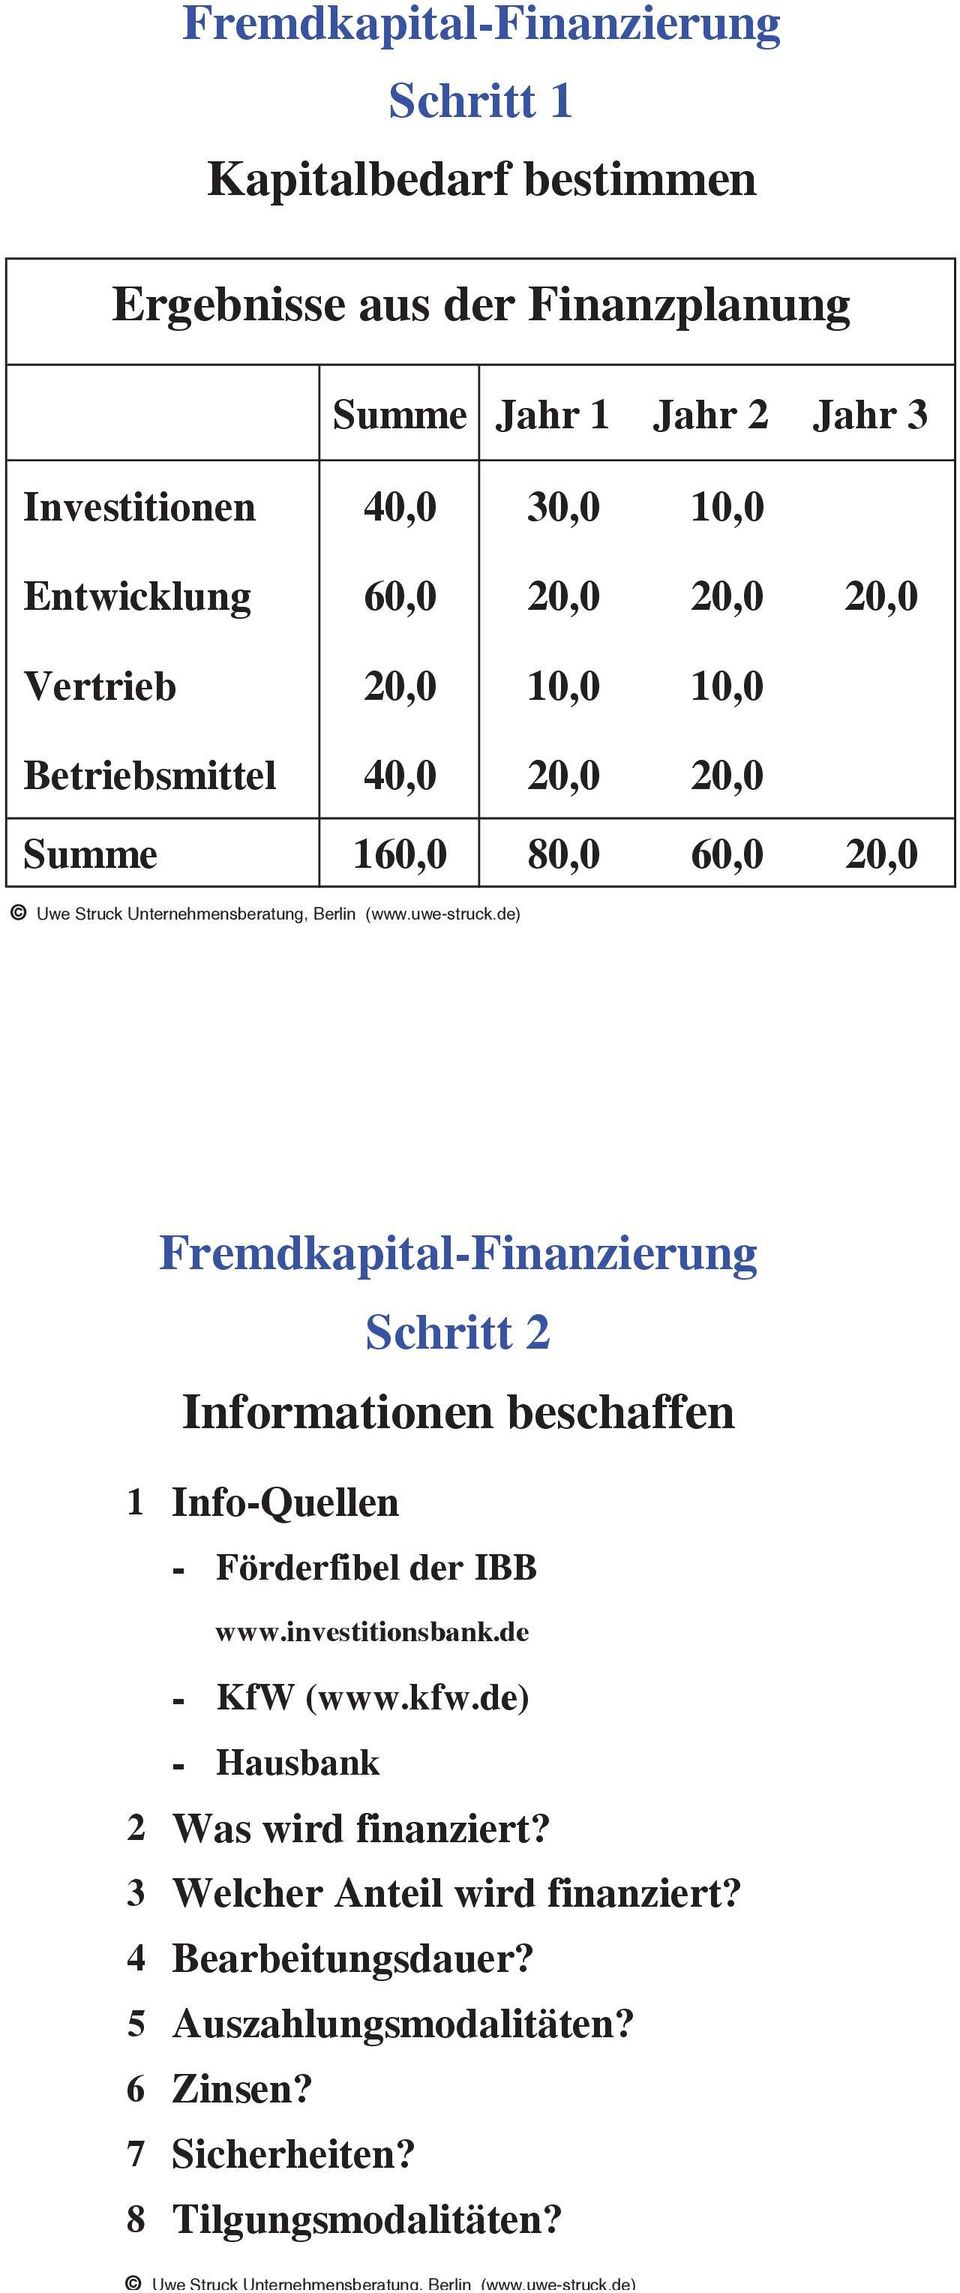 Fremdkapital-Finanzierung Schritt 2 Informationen beschaffen 1 Info-Quellen - Förderfibel der IBB www.investitionsbank.de - KfW (www.kfw.